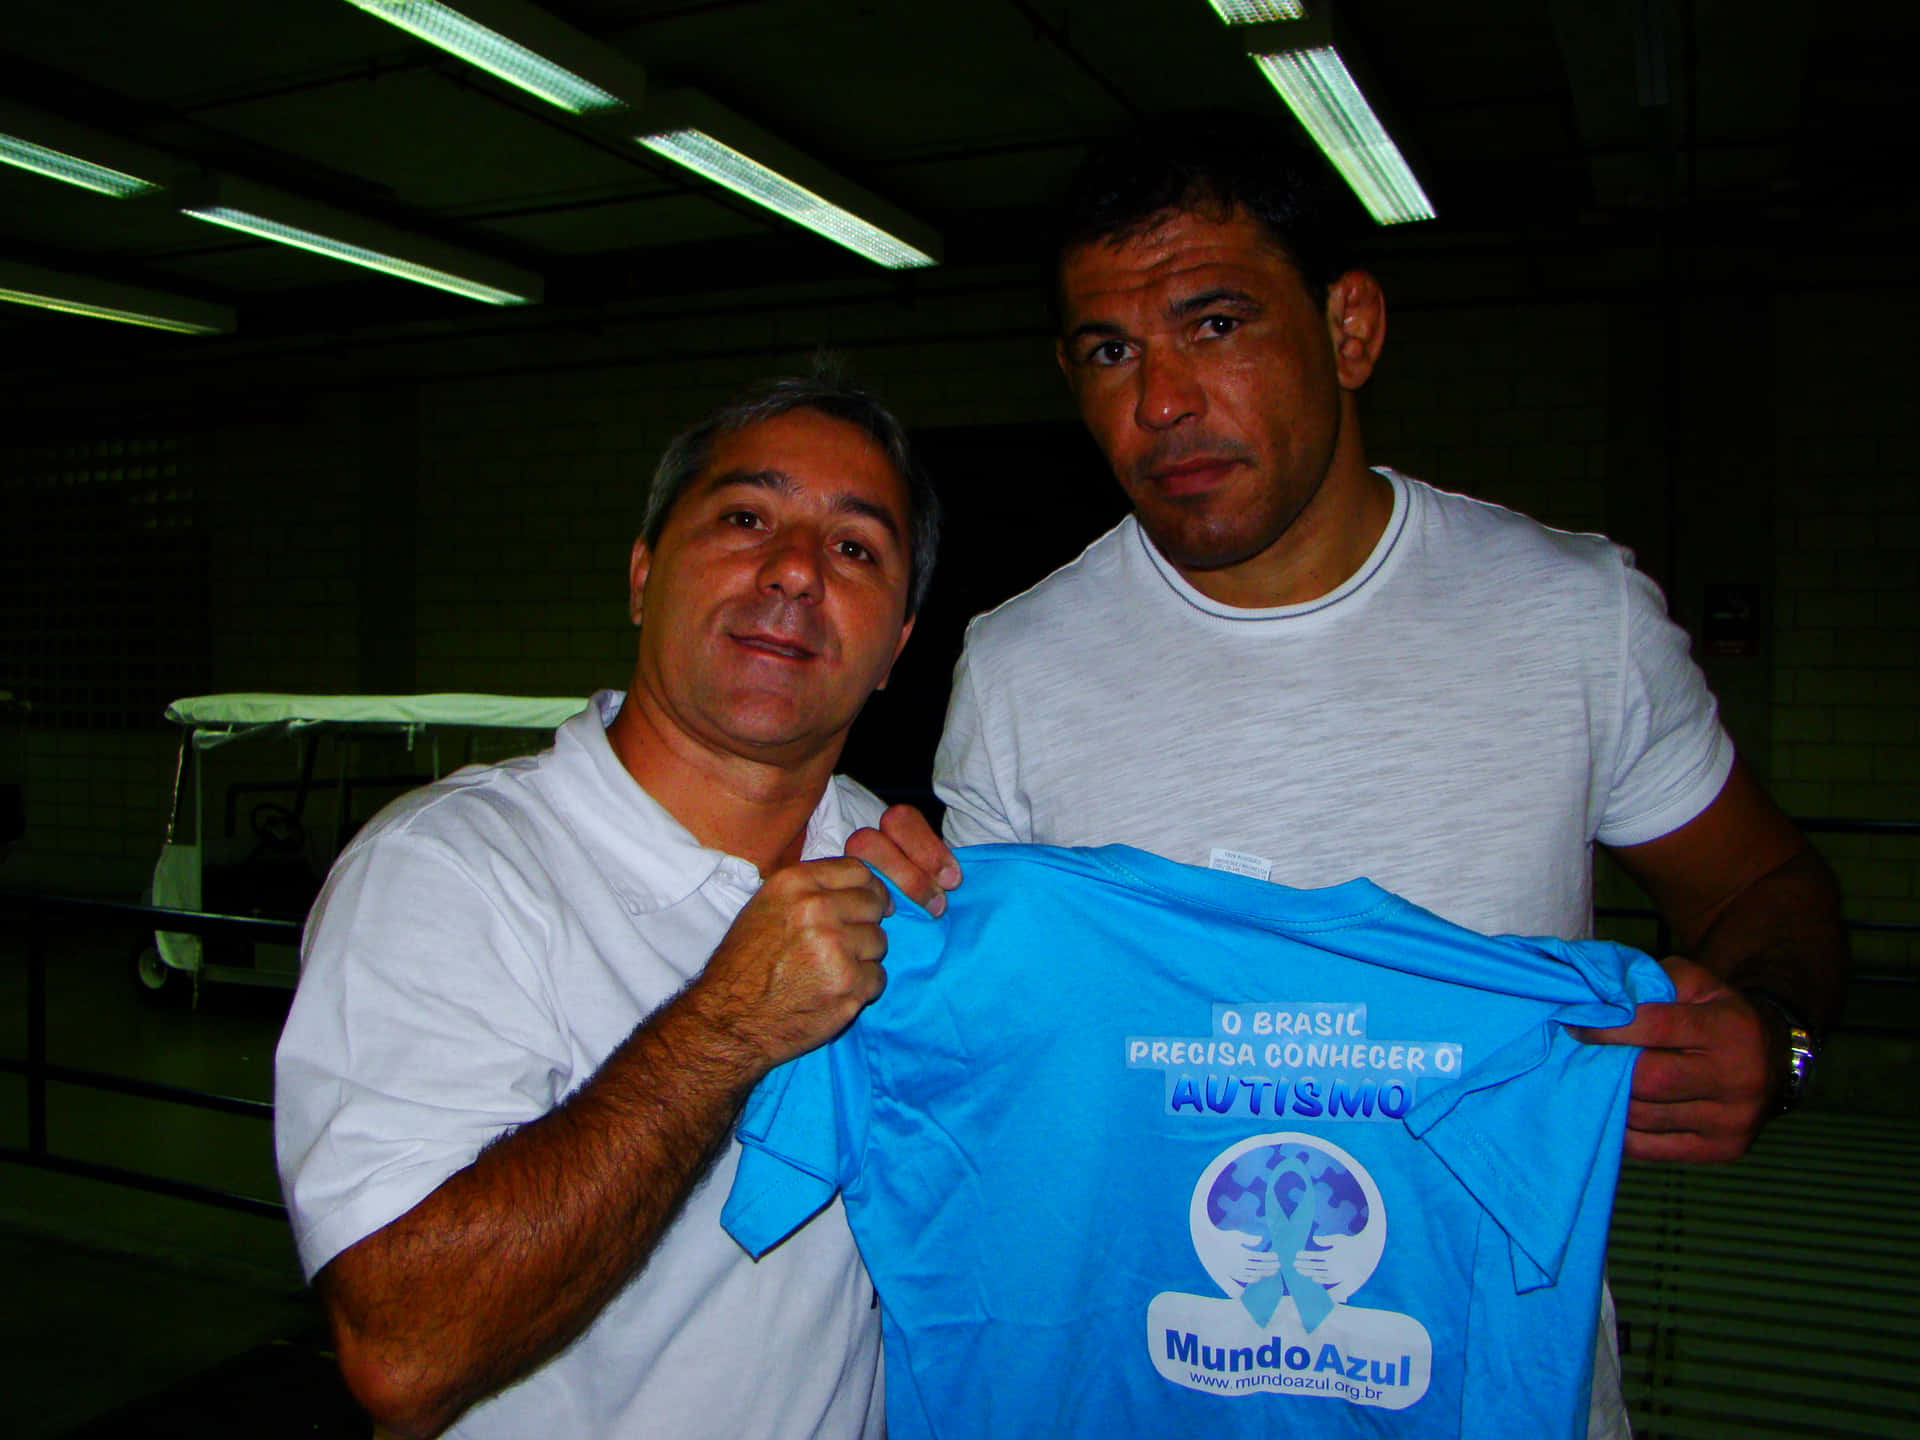 Luchadorde Mma, Antonio Rogerio Nogueira, Promoviendo La Conciencia Sobre El Autismo. Fondo de pantalla